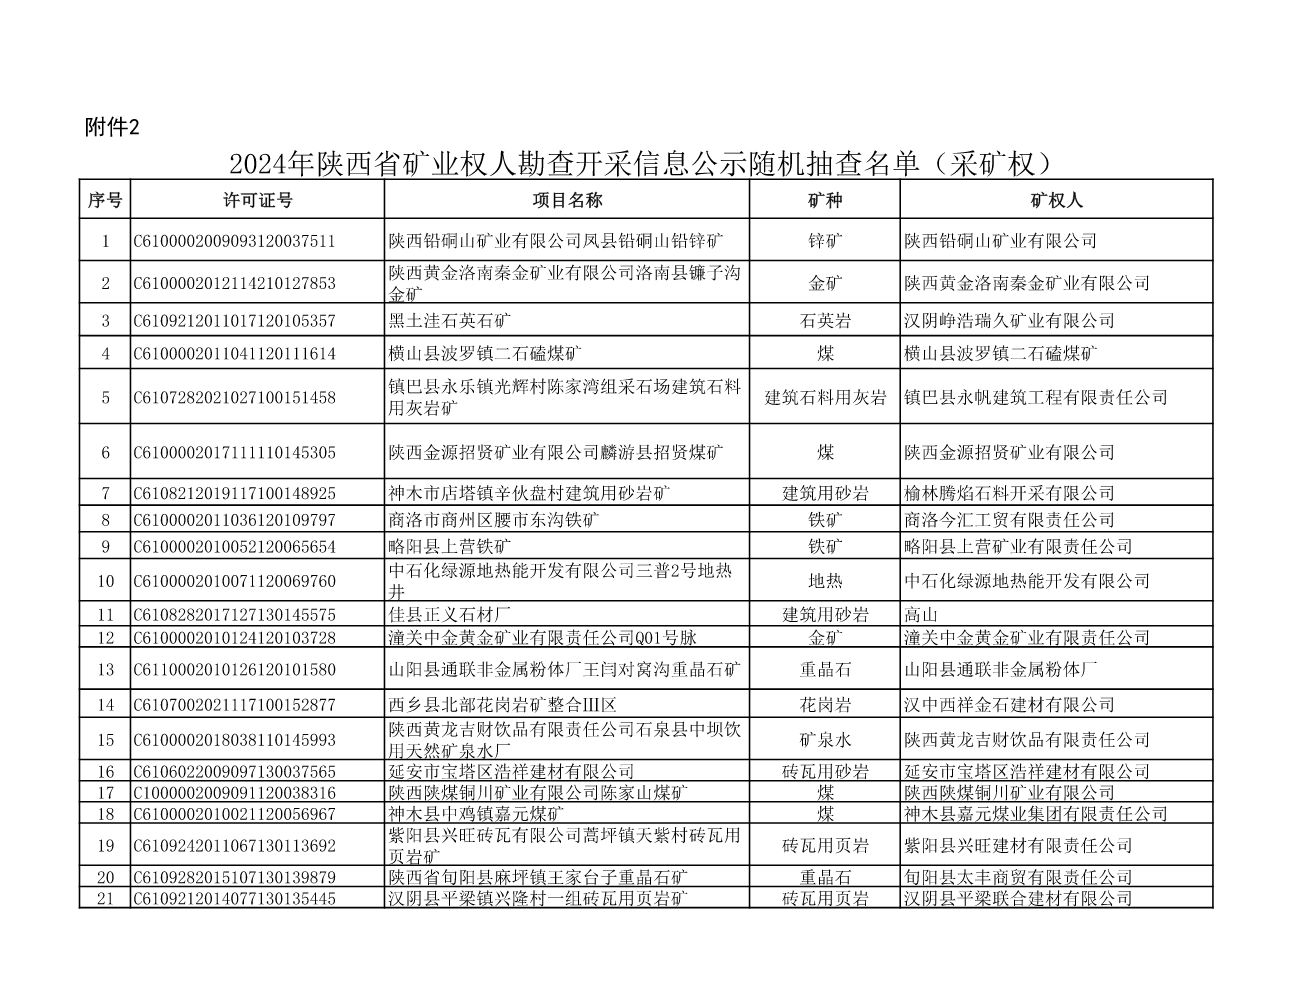 2、2024年陕西省矿业权人勘查开采信息公示随机抽查名单（采矿权）